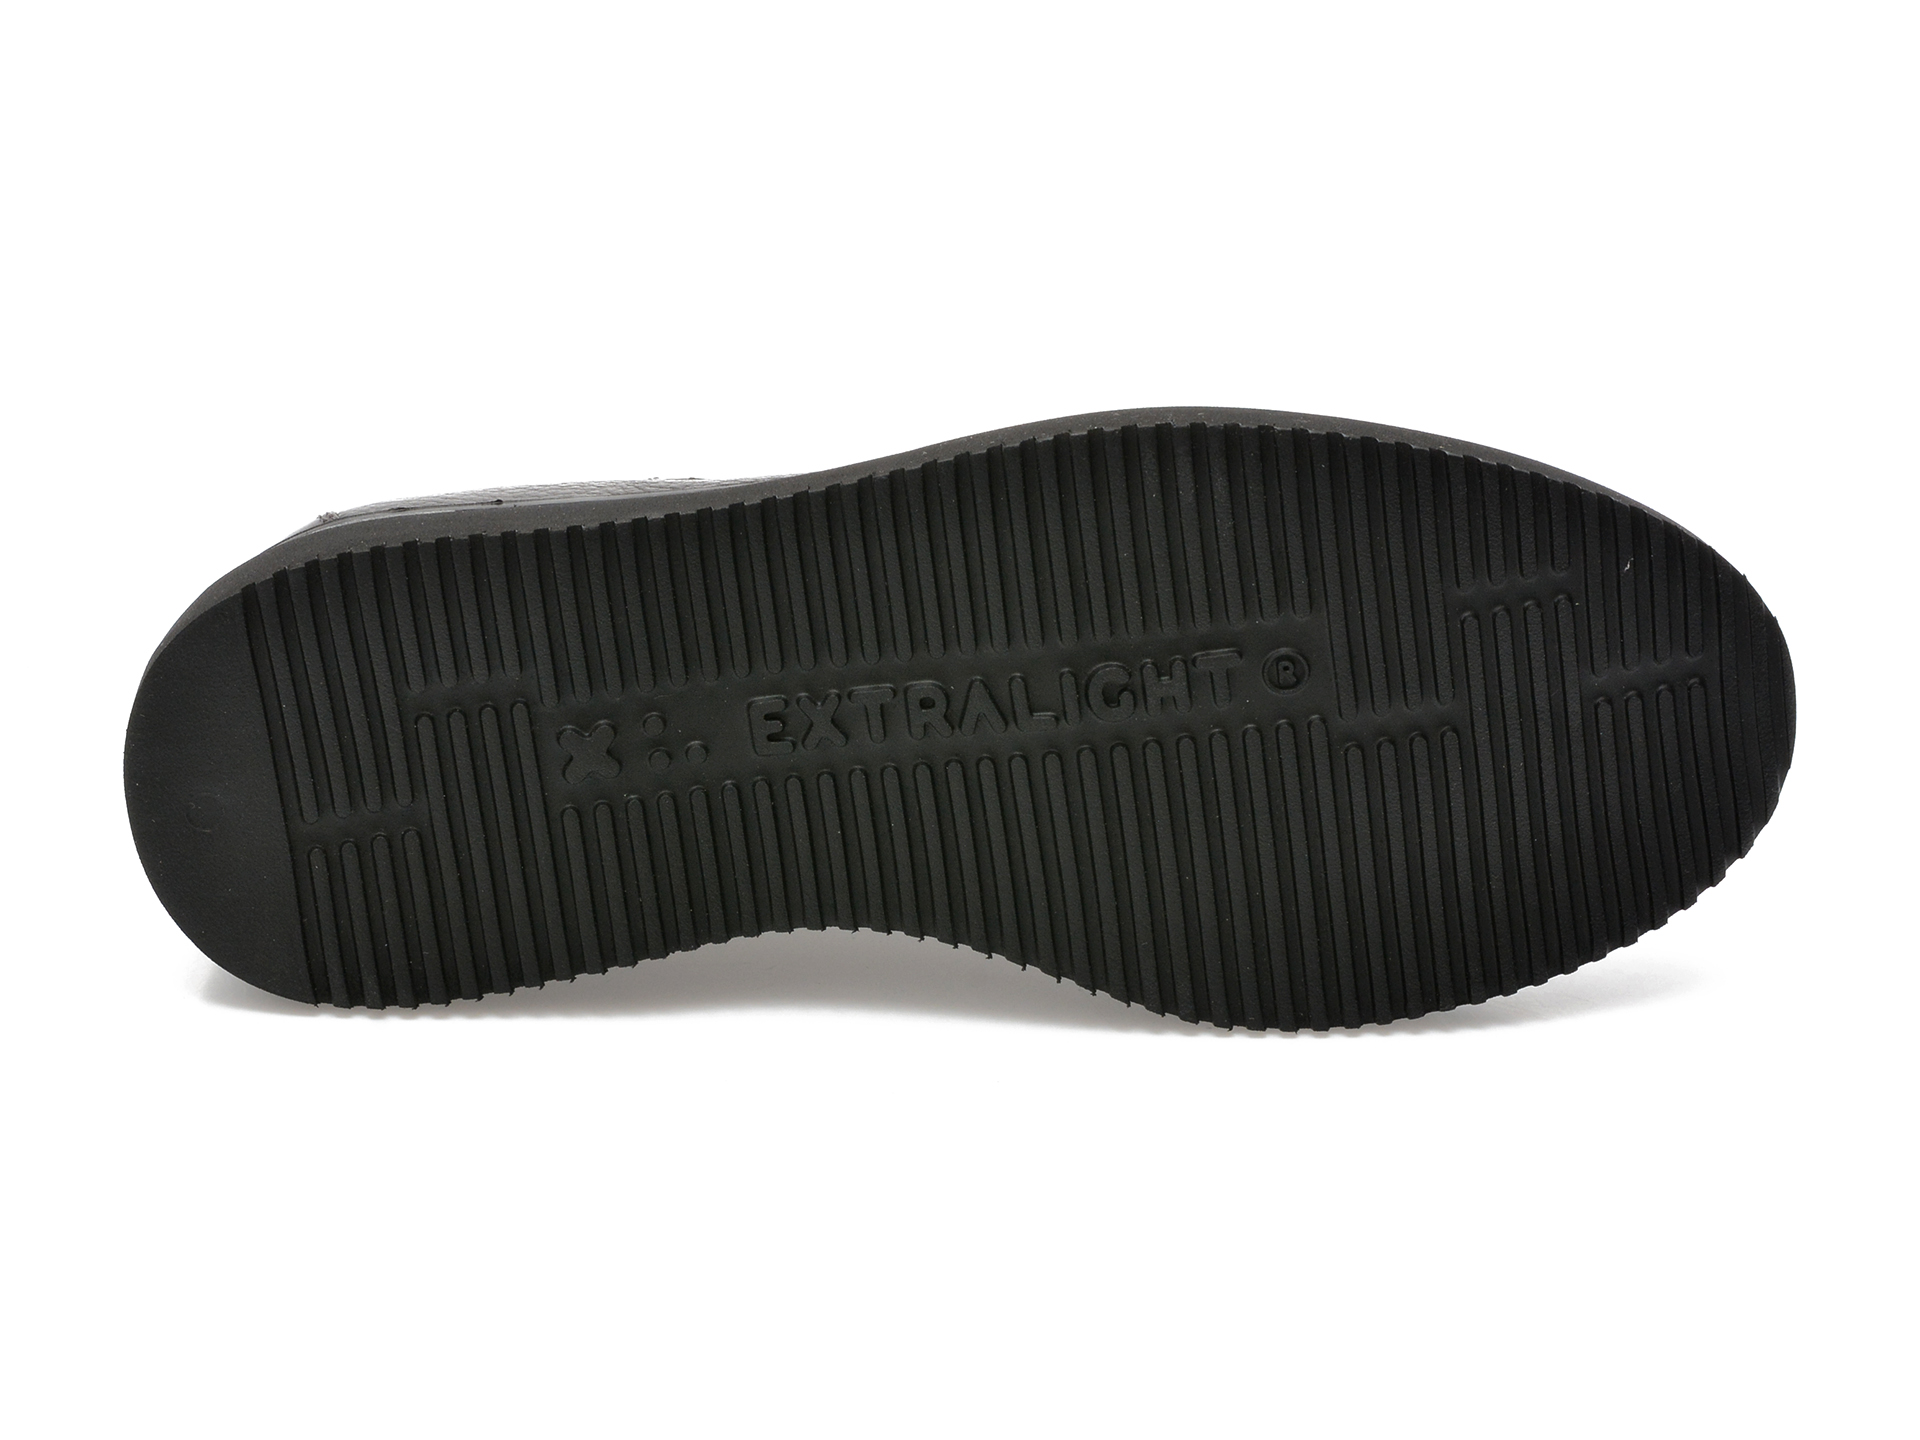 Poze Pantofi EPICA maro, 47332, din piele naturala tezyo.ro